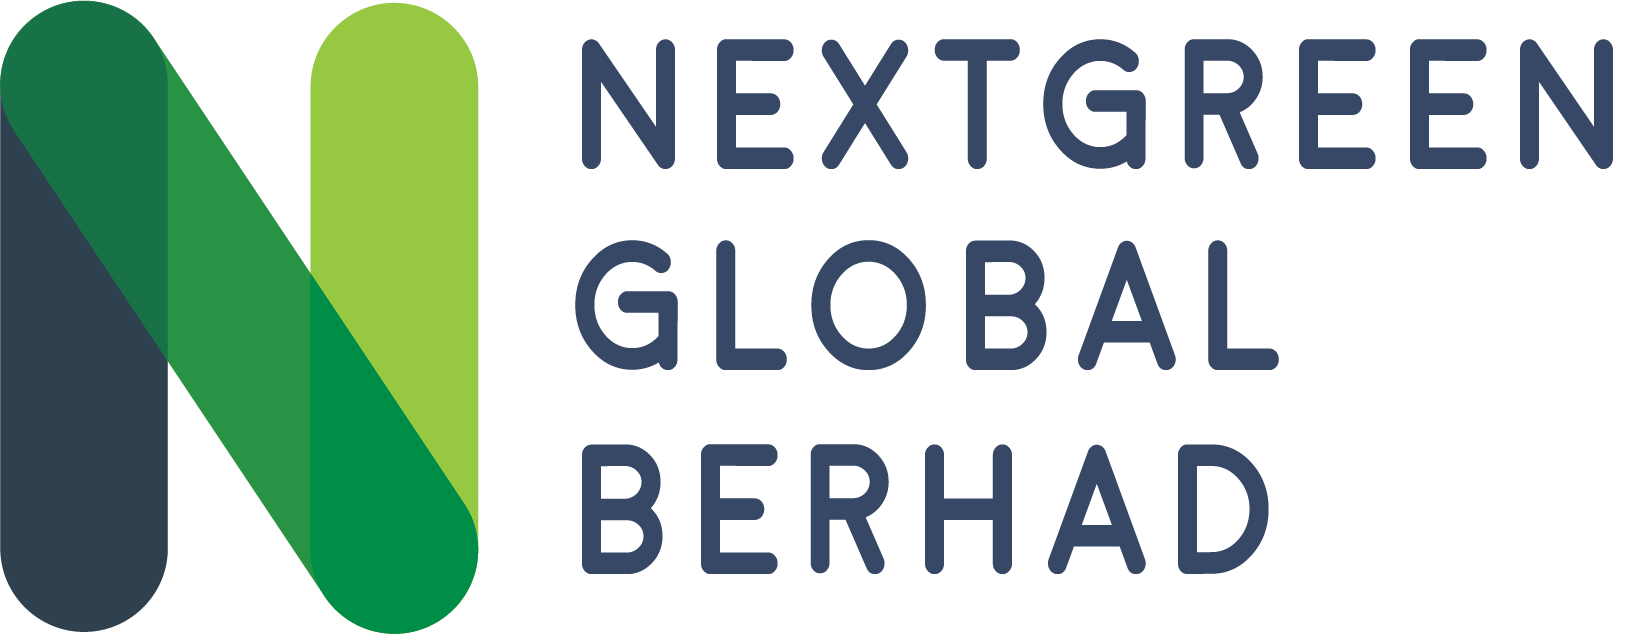 Nextgreen Global Berhad